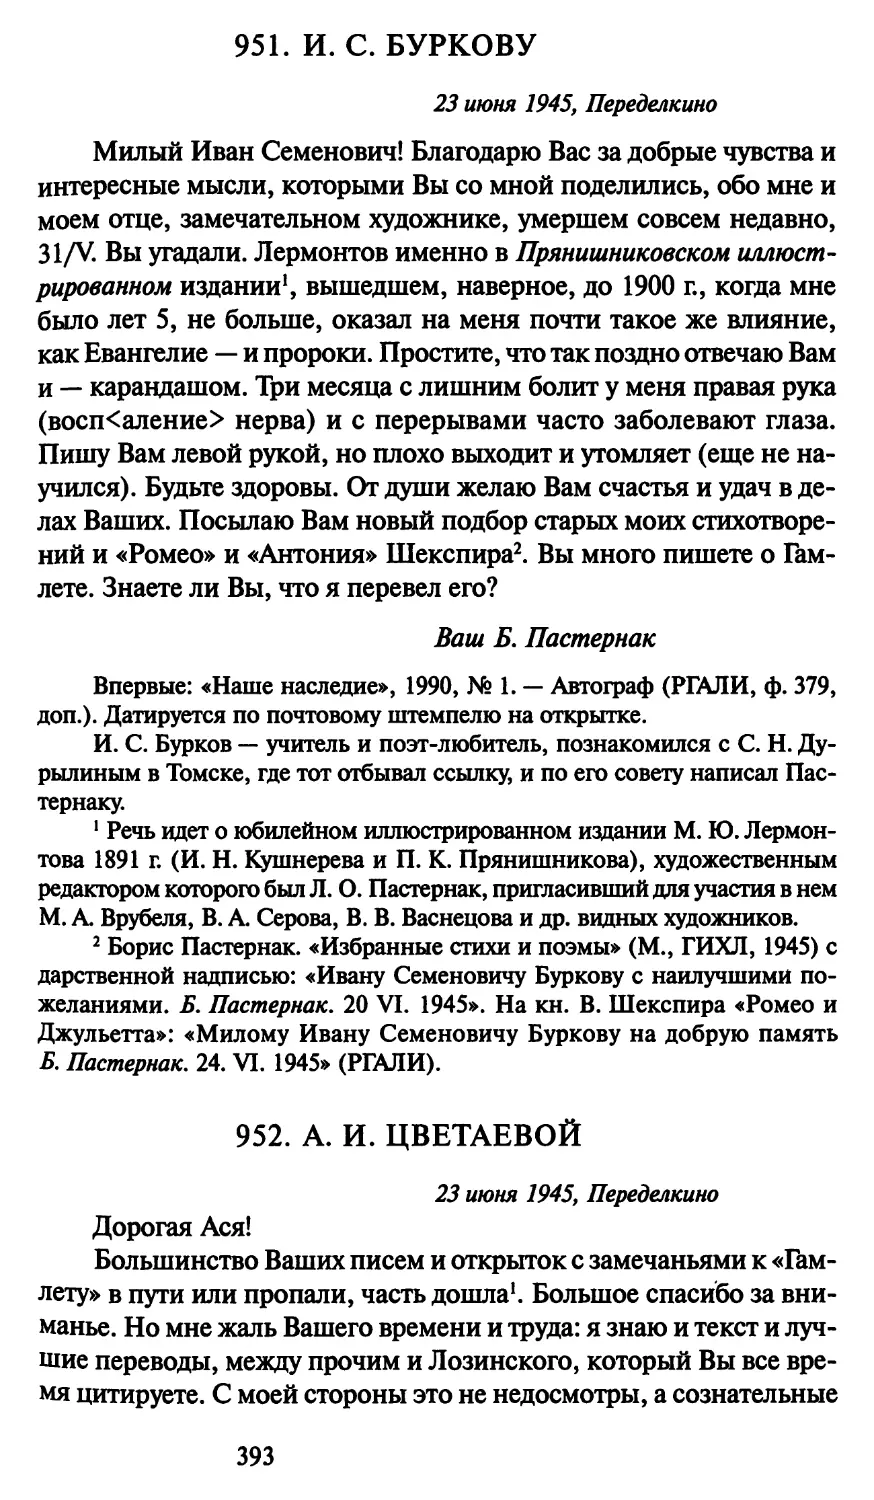 952. А. И. Цветаевой 23 июня 1945